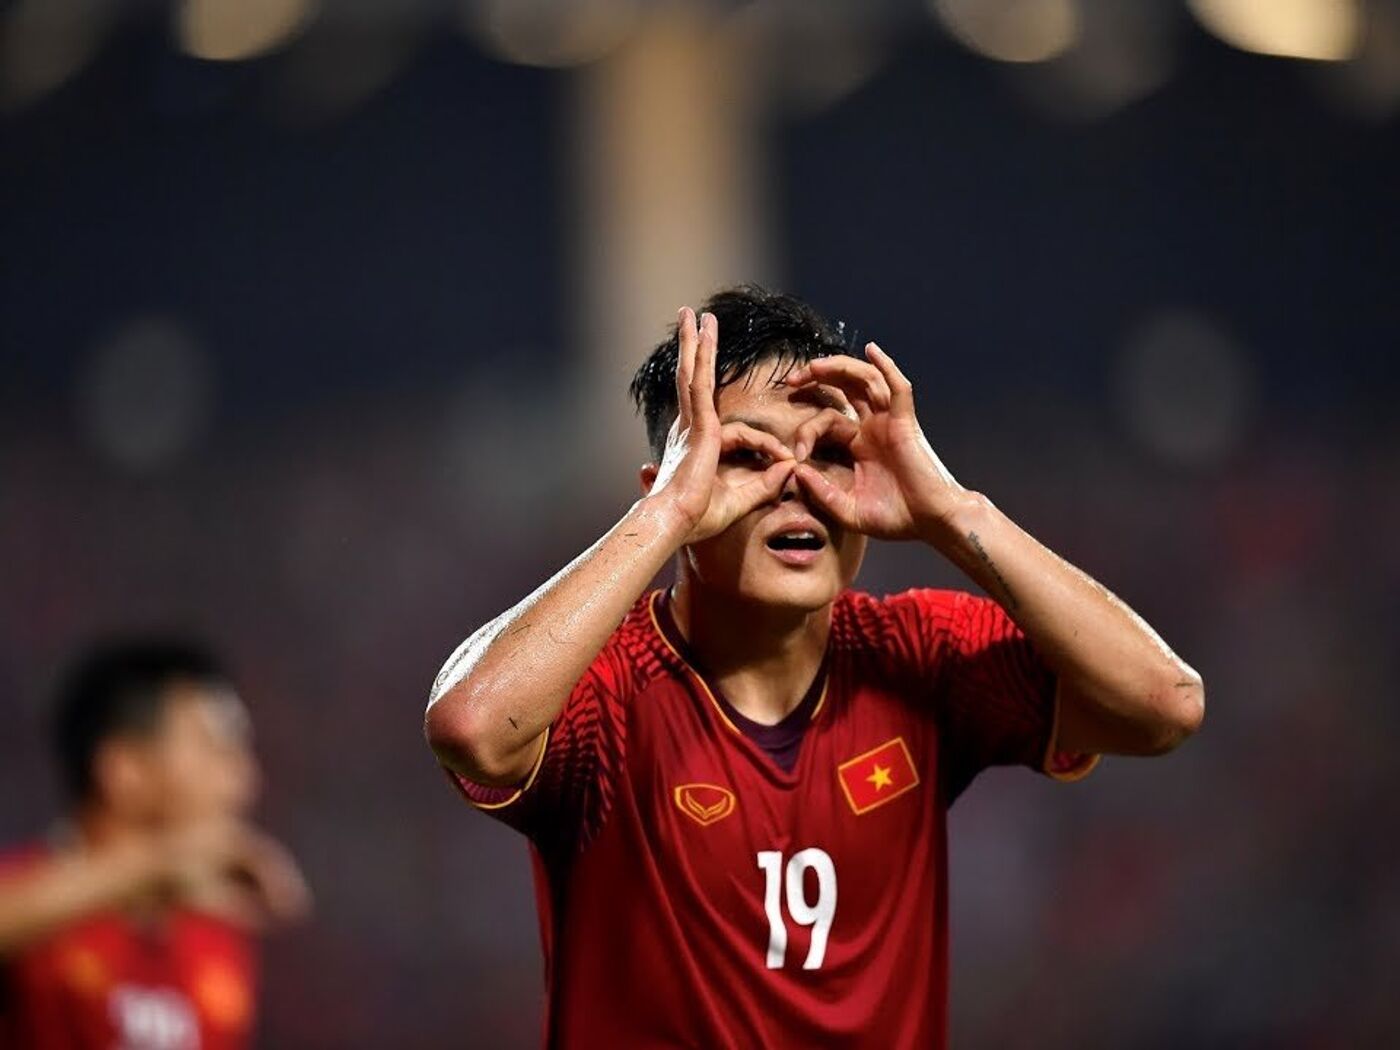 Quang Hải Giành Giải Bàn Thắng Đẹp Nhất Asian Cup 2019 - 07.02.2019,  Sputnik Việt Nam